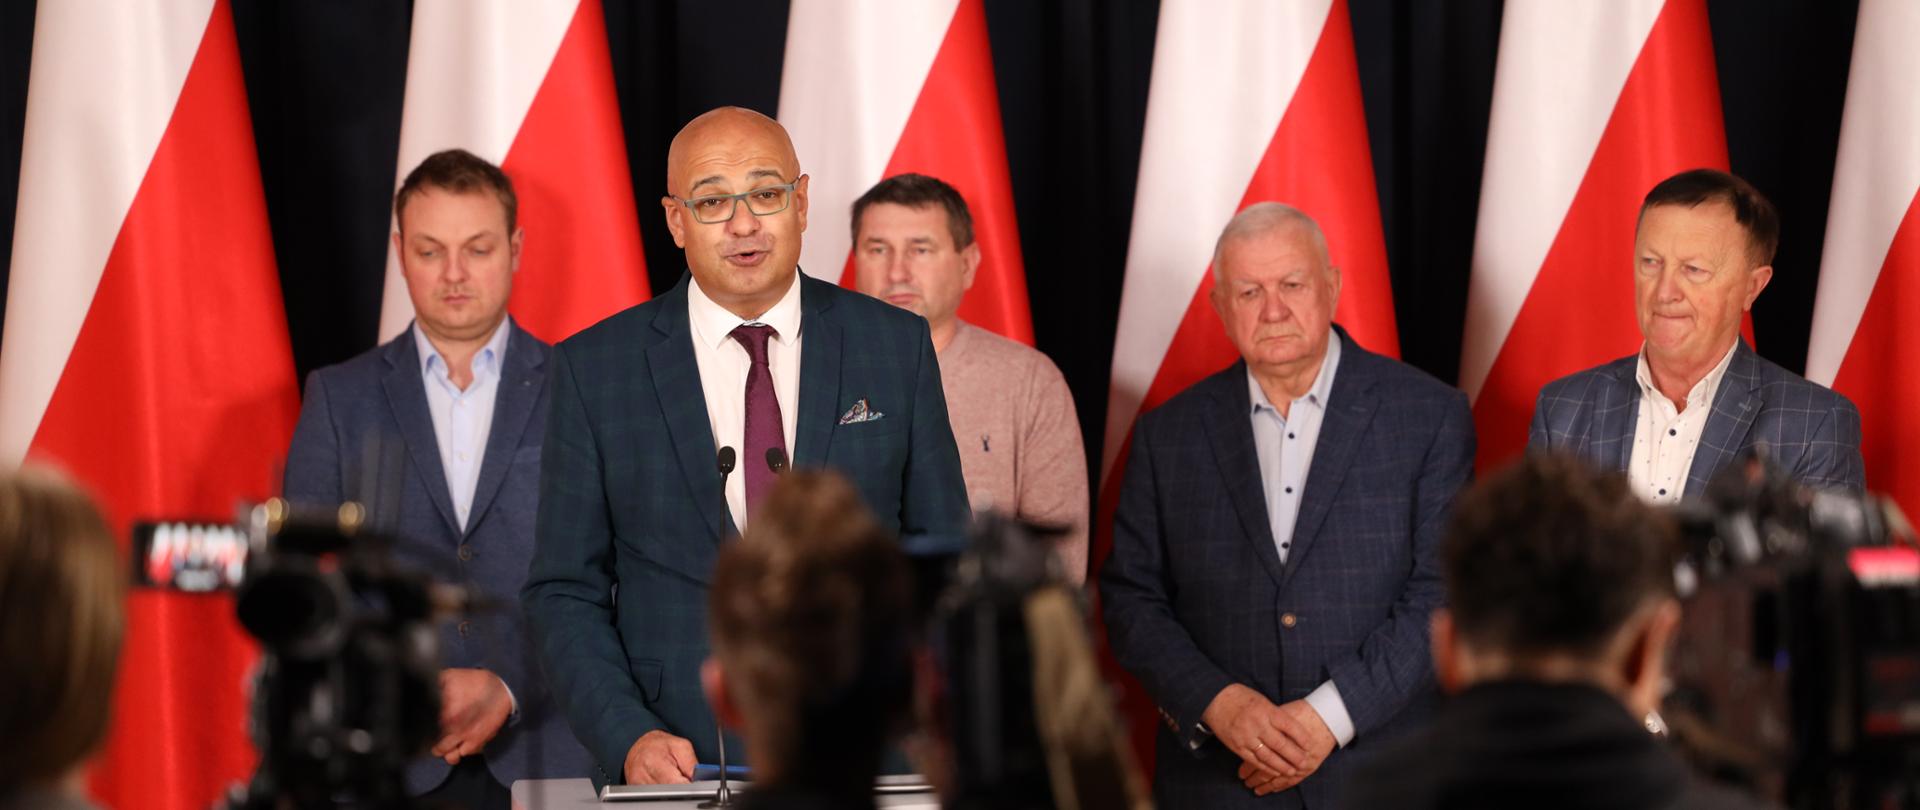 Правительство Польши заявило о договоренности с пикетчиками на границе с Украиной